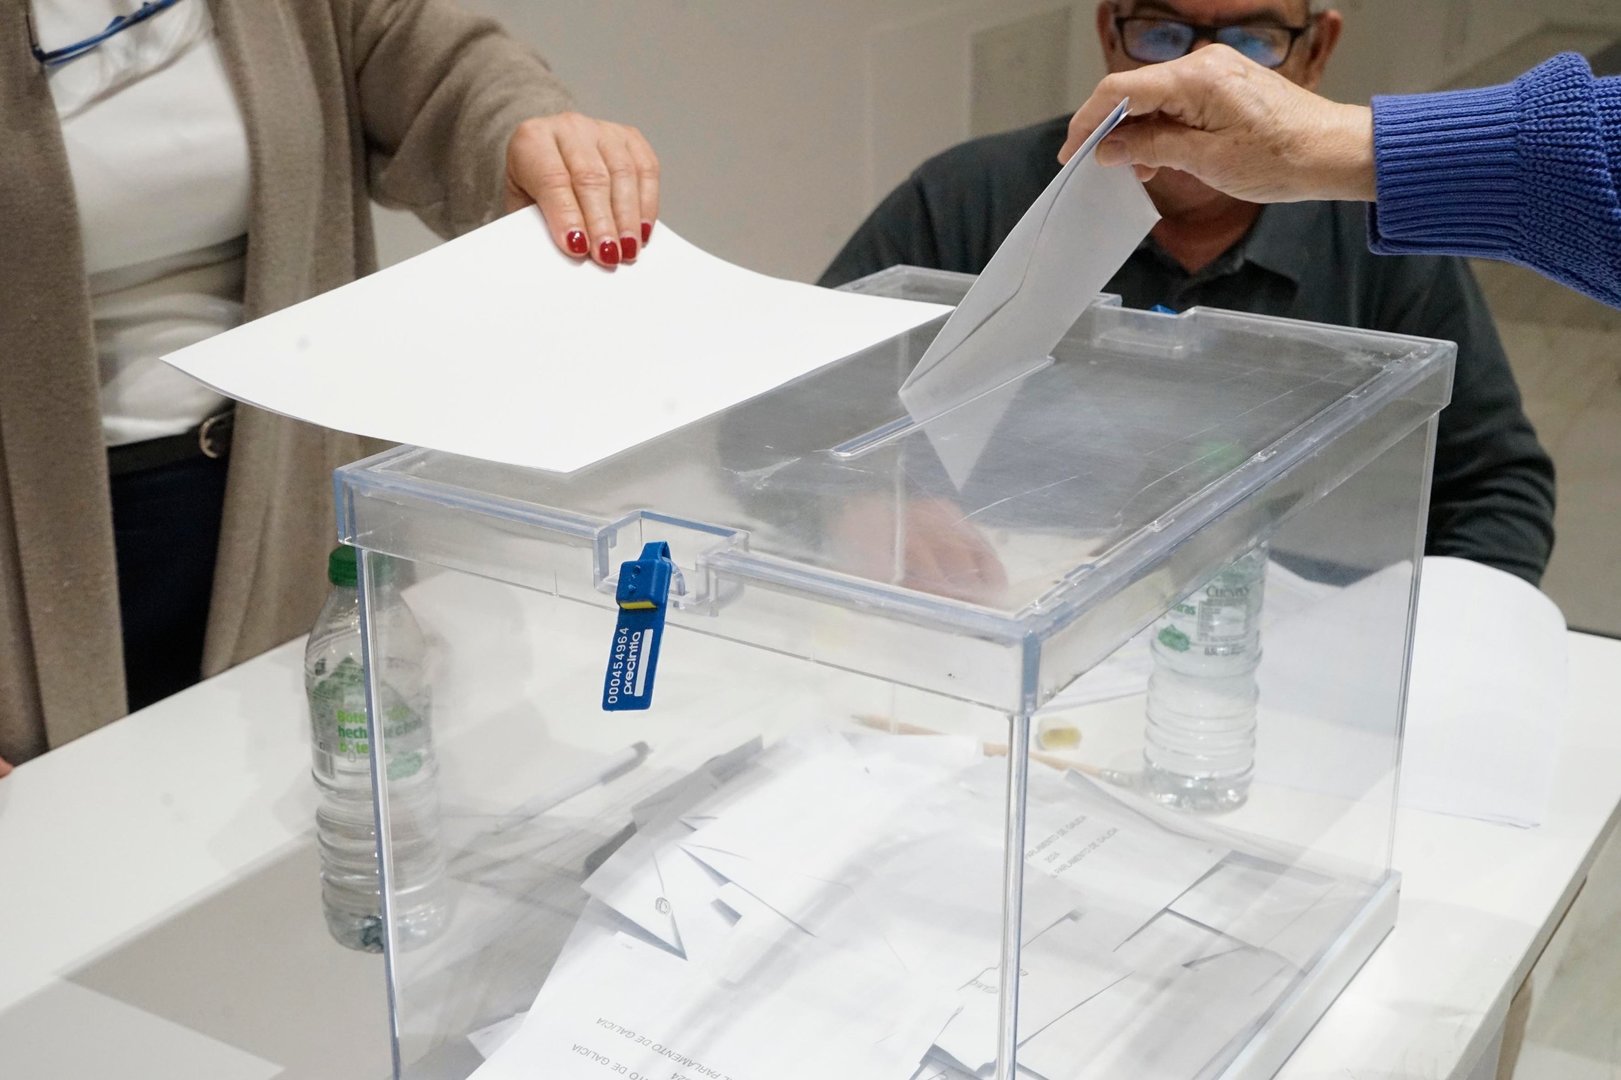 Una persona introduce su voto en la urna. // J.V. Landín